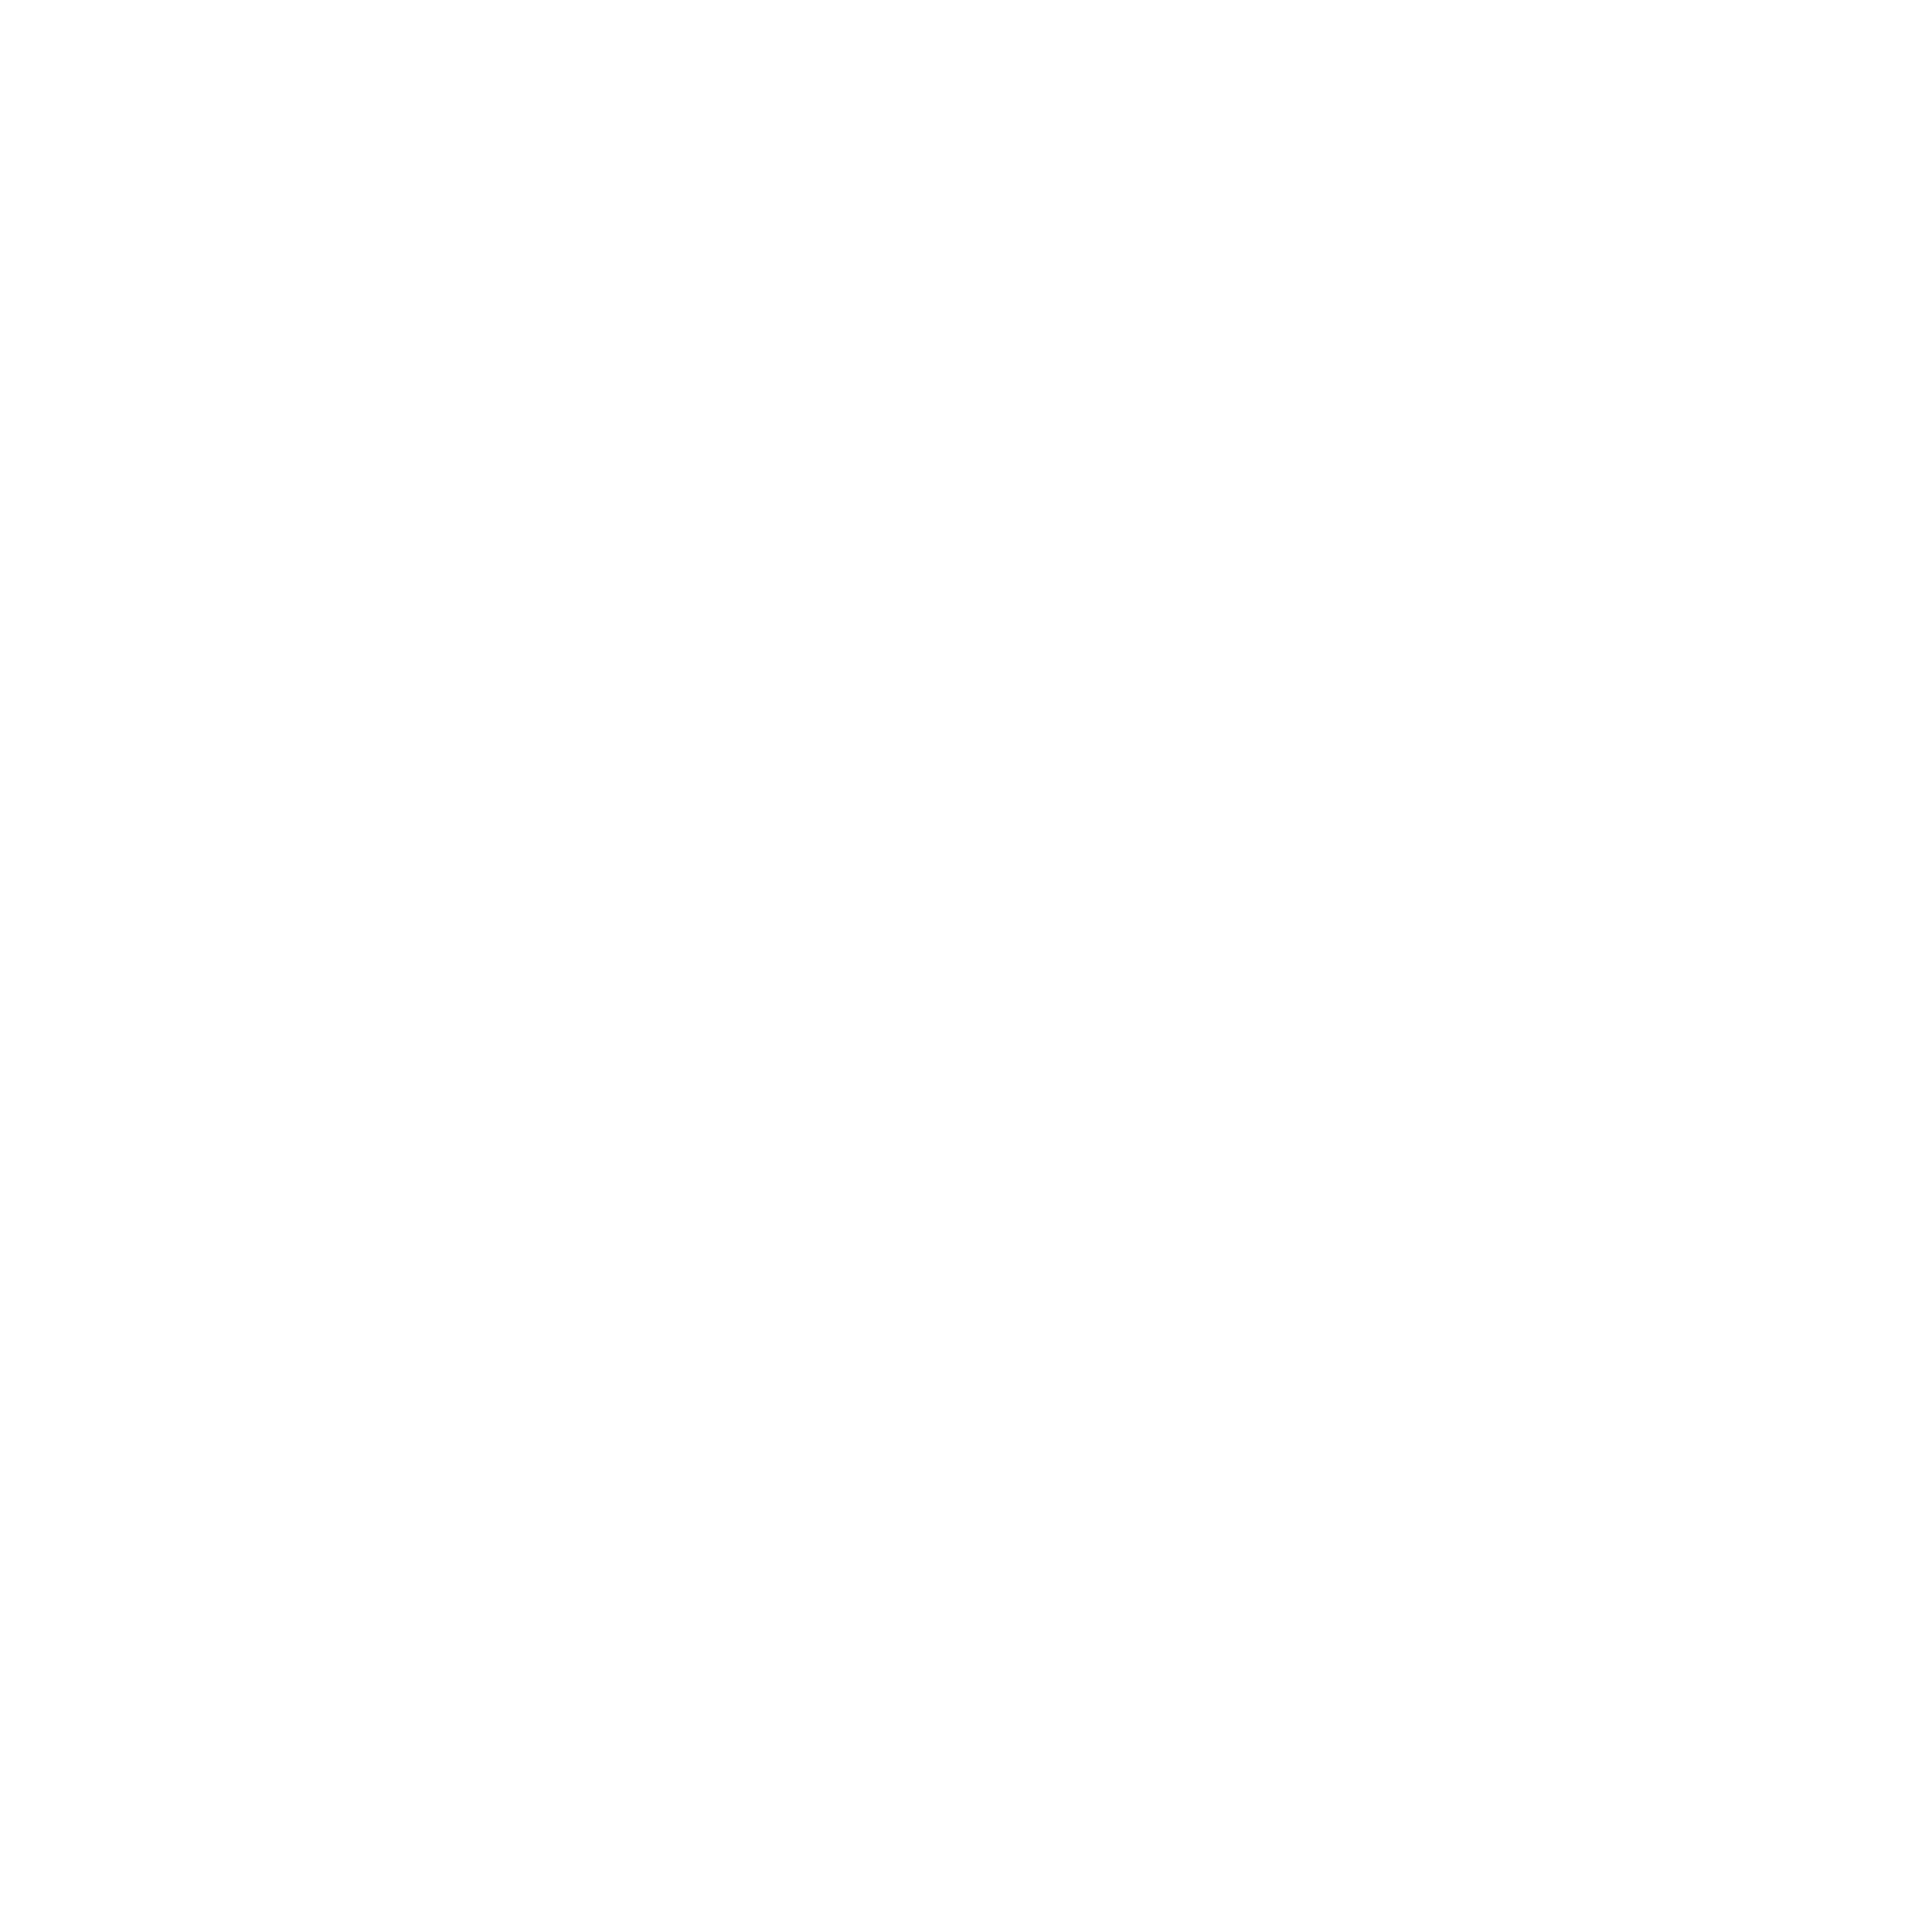 clipart plane icon